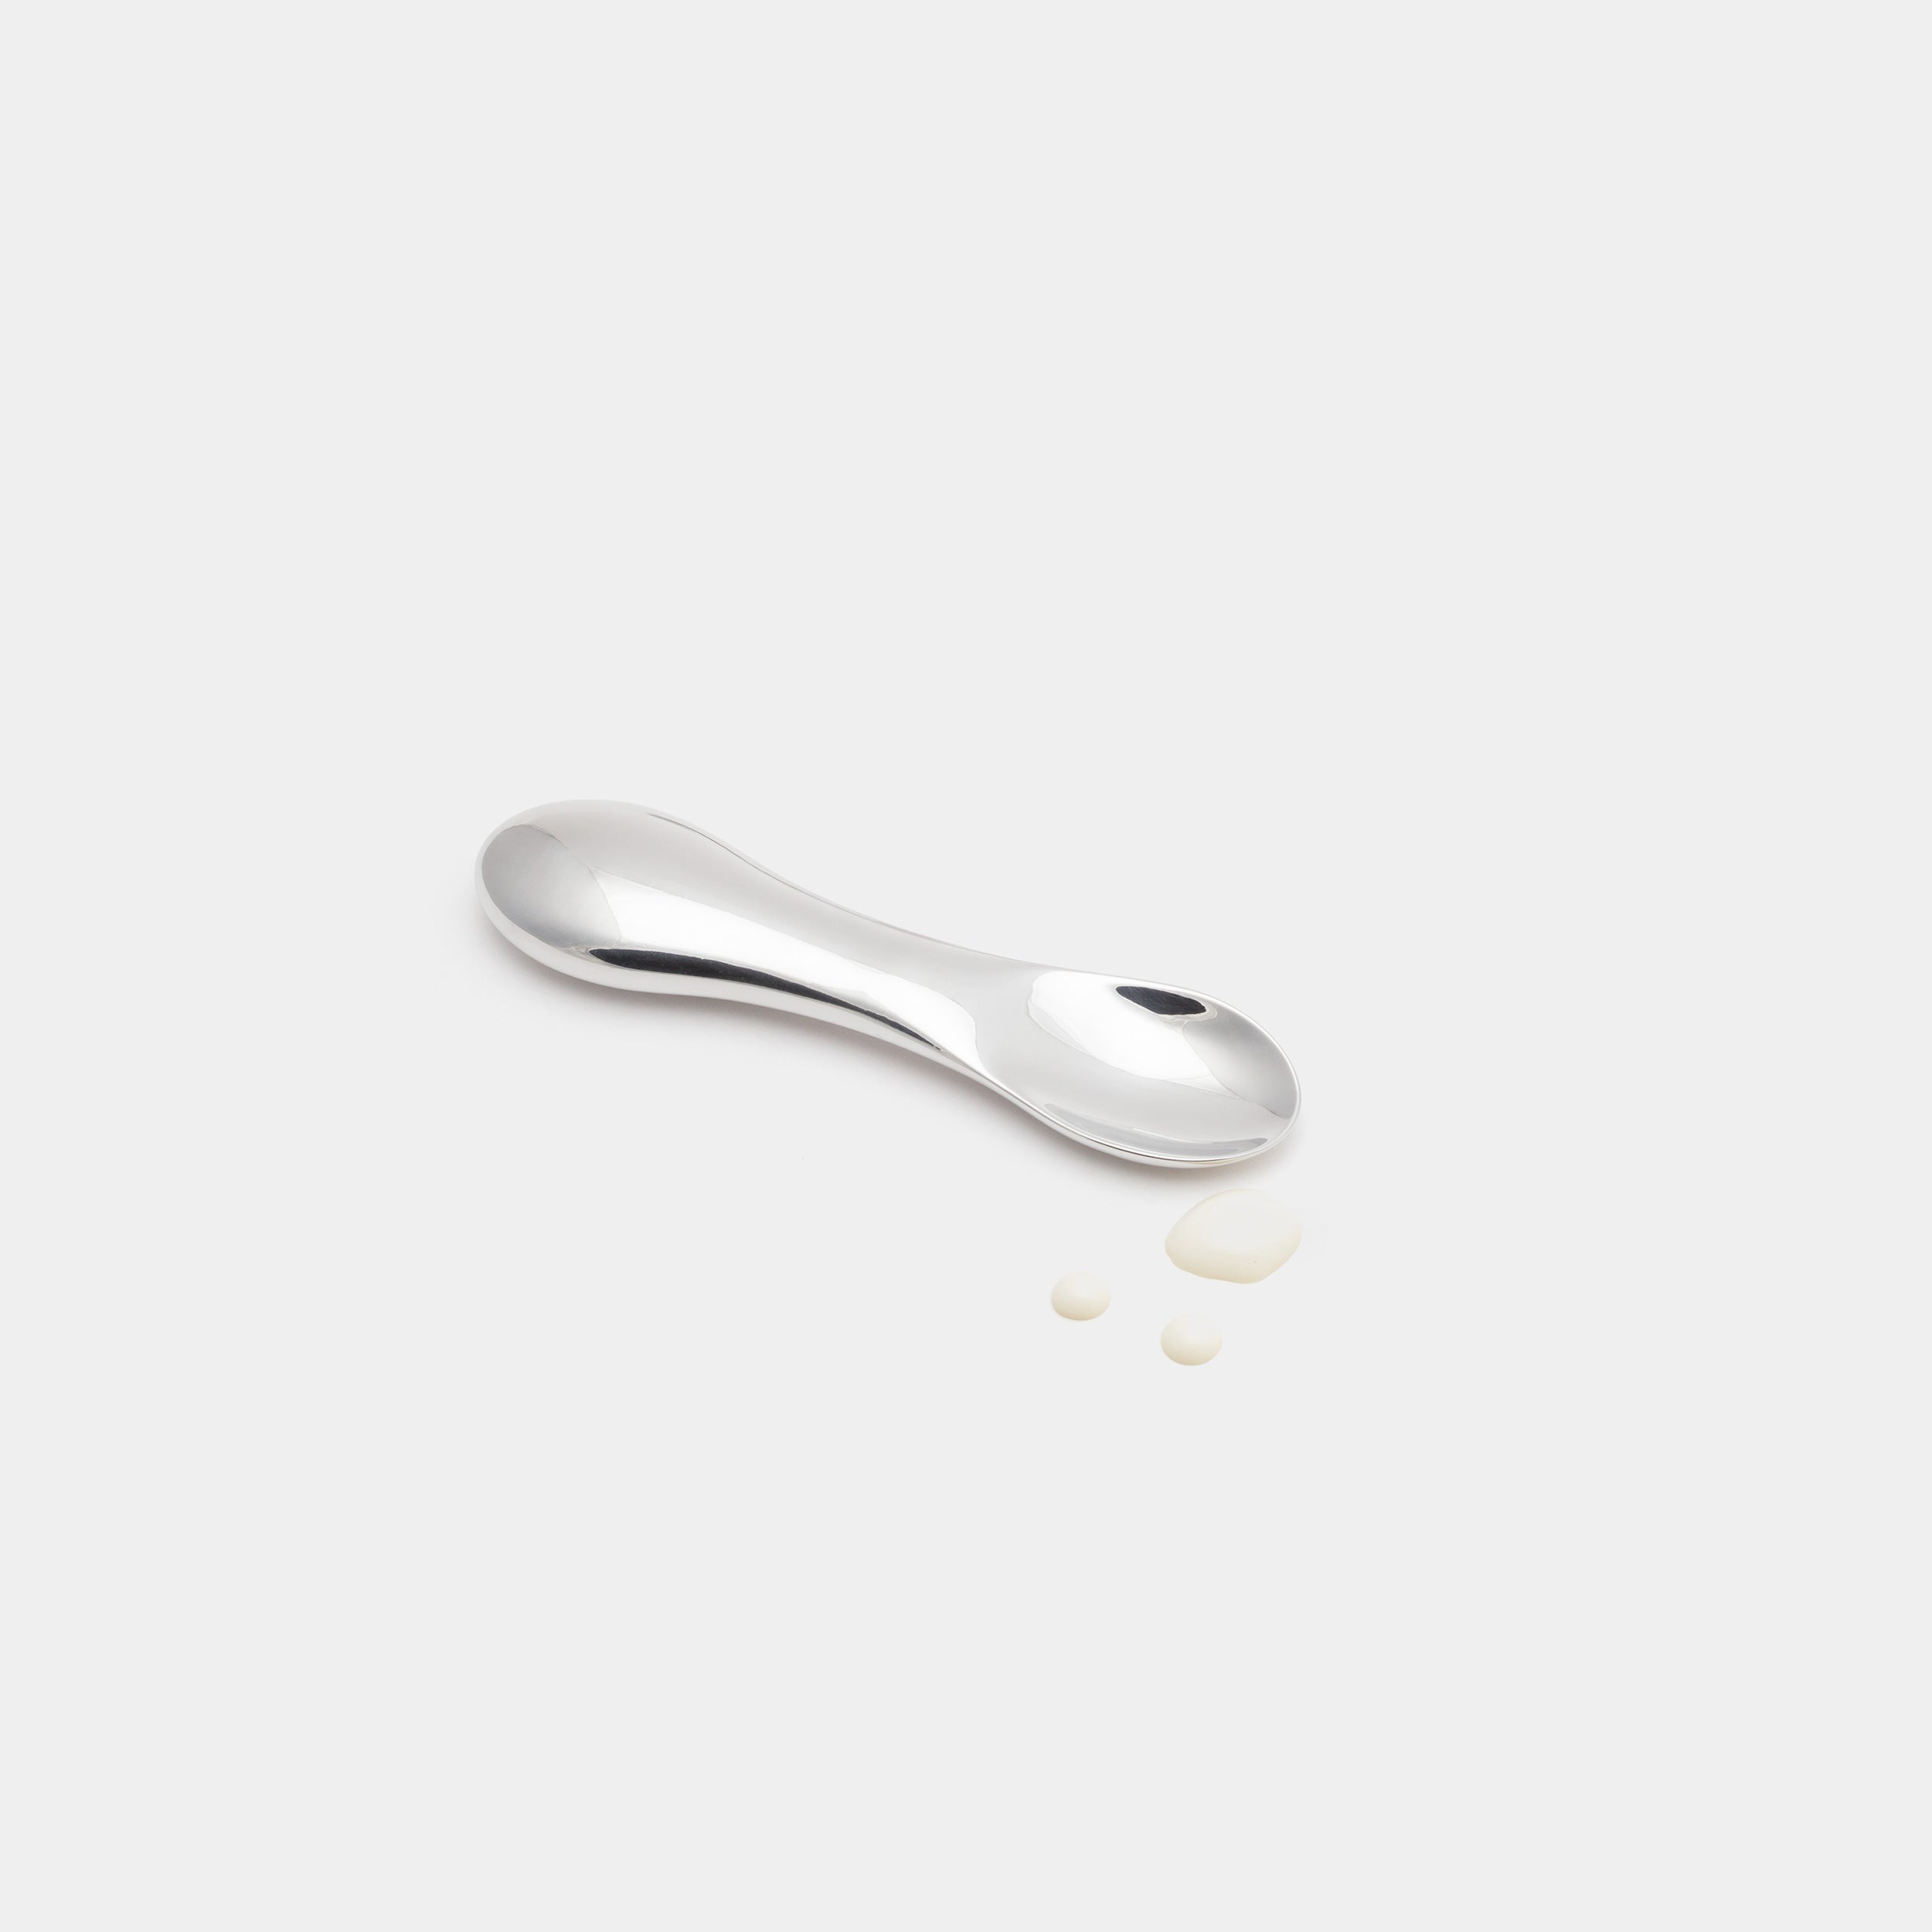 15.0 % Ice Cream Spoon With Vanilla Ice Cream